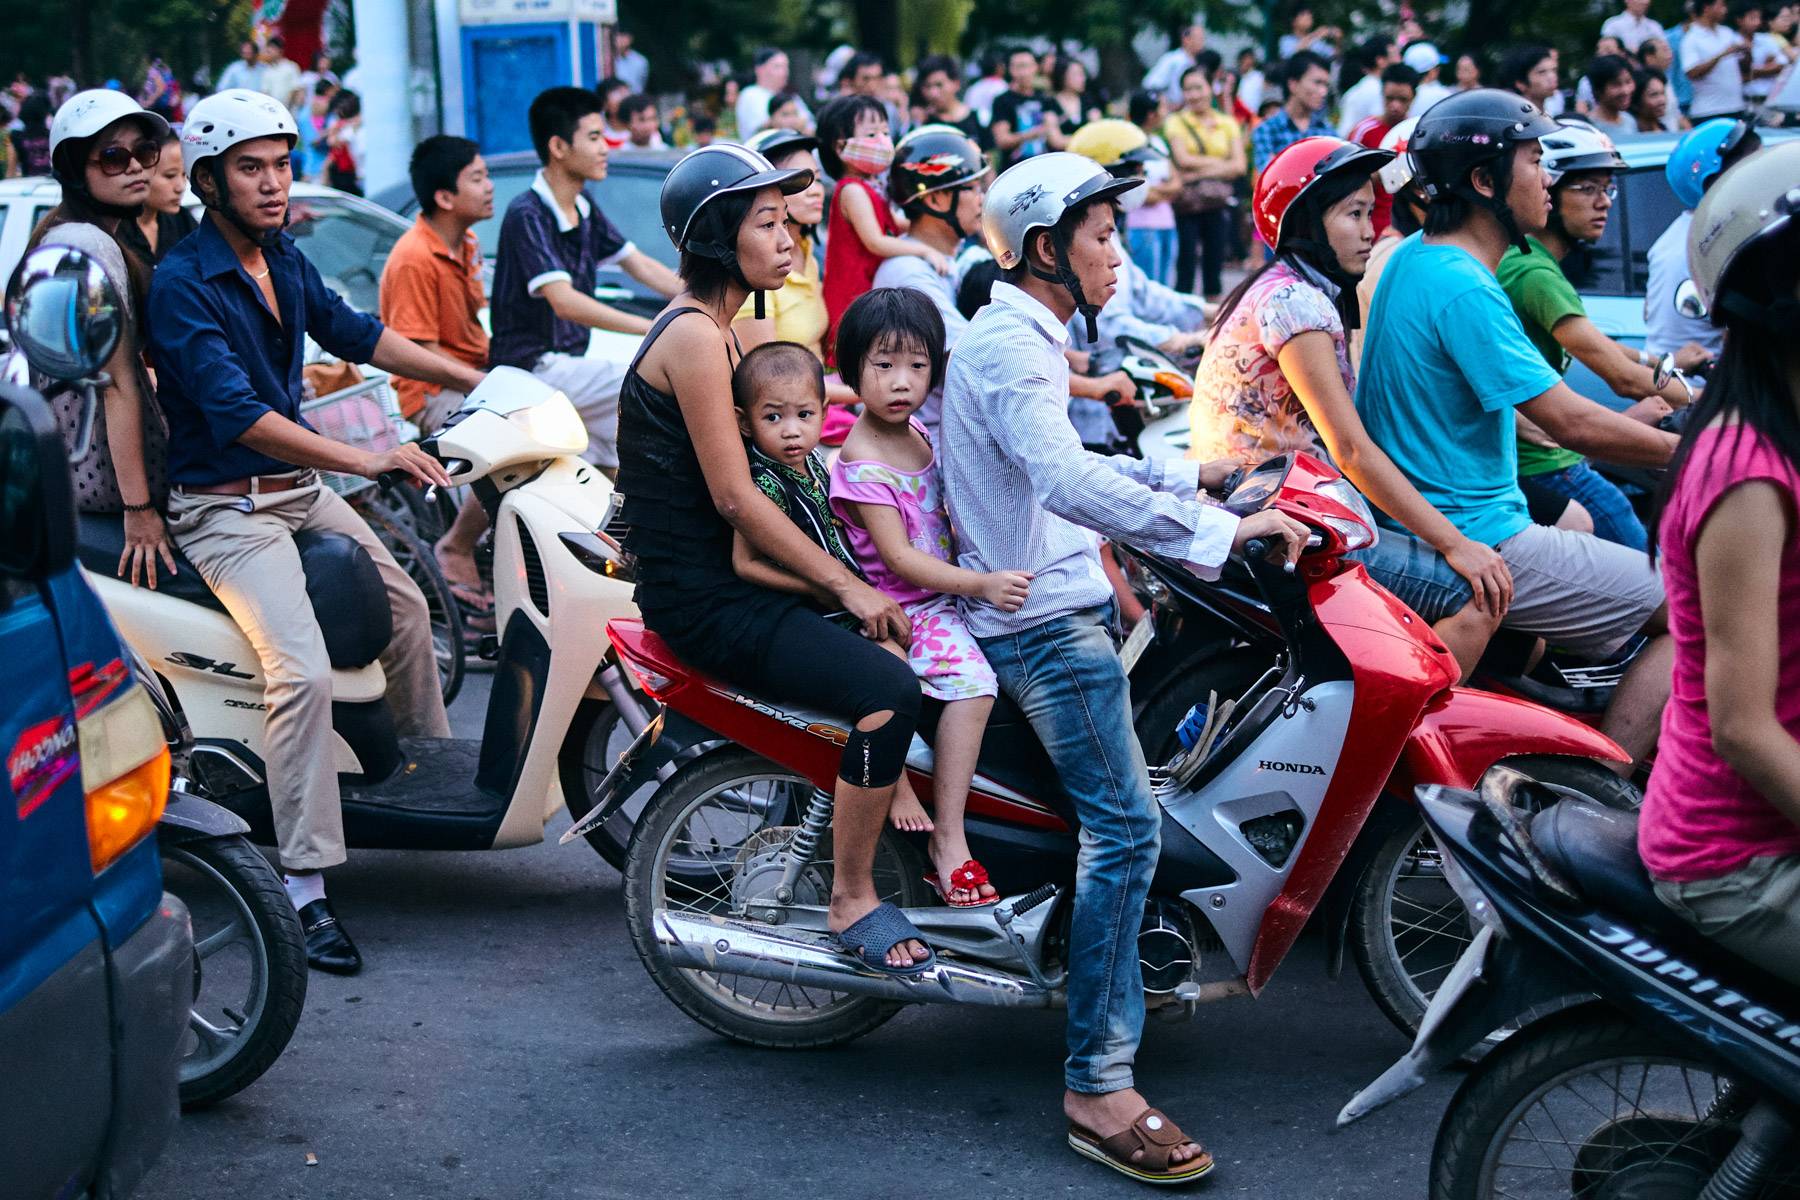 Что нельзя делать во вьетнаме туристам – традиции и обычаи